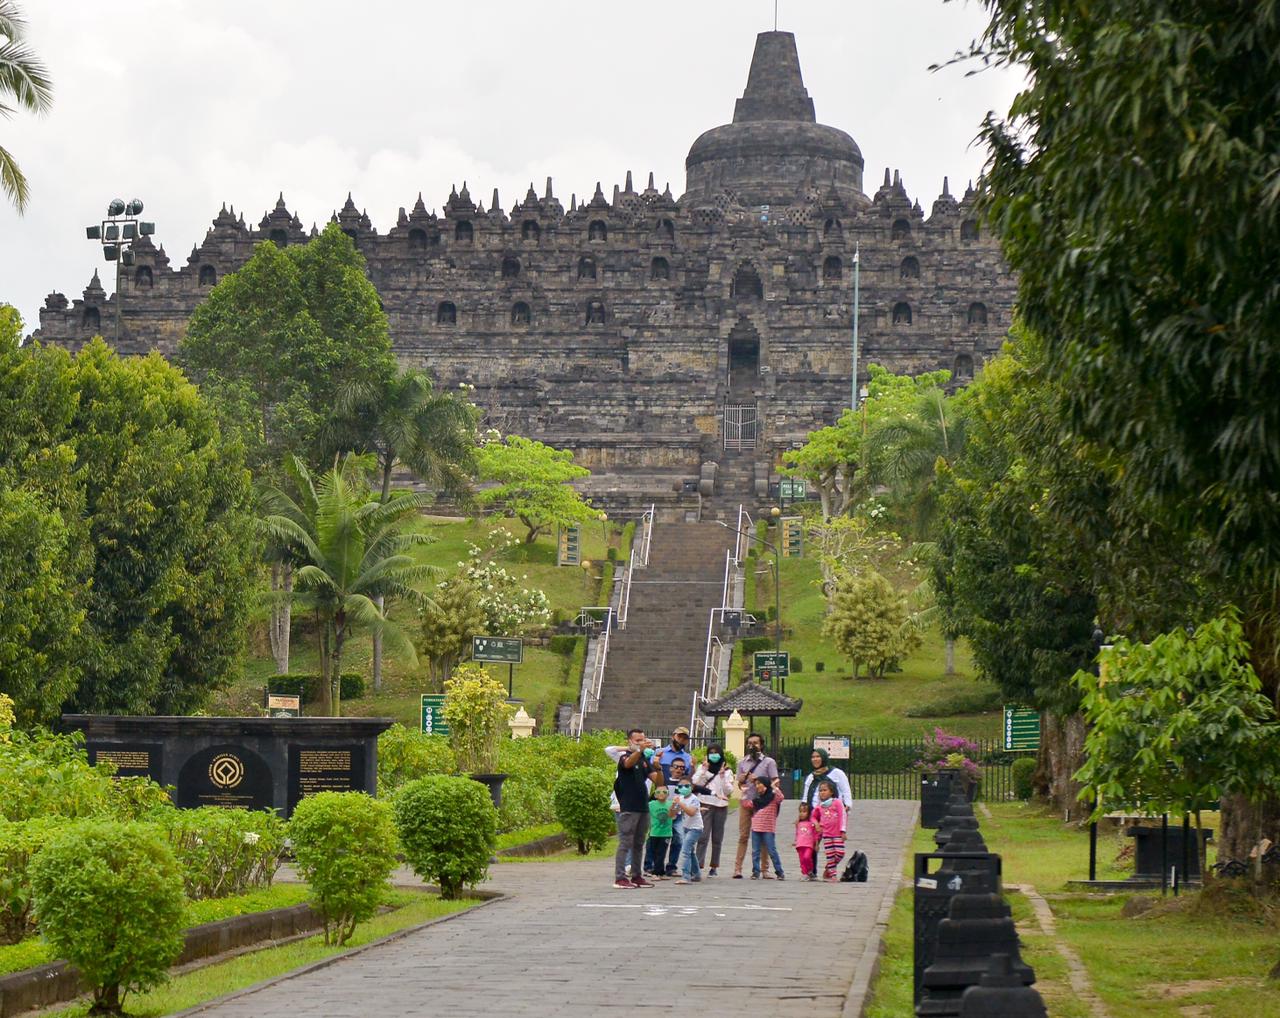 Menparekraf-Borobudur-3.jpg